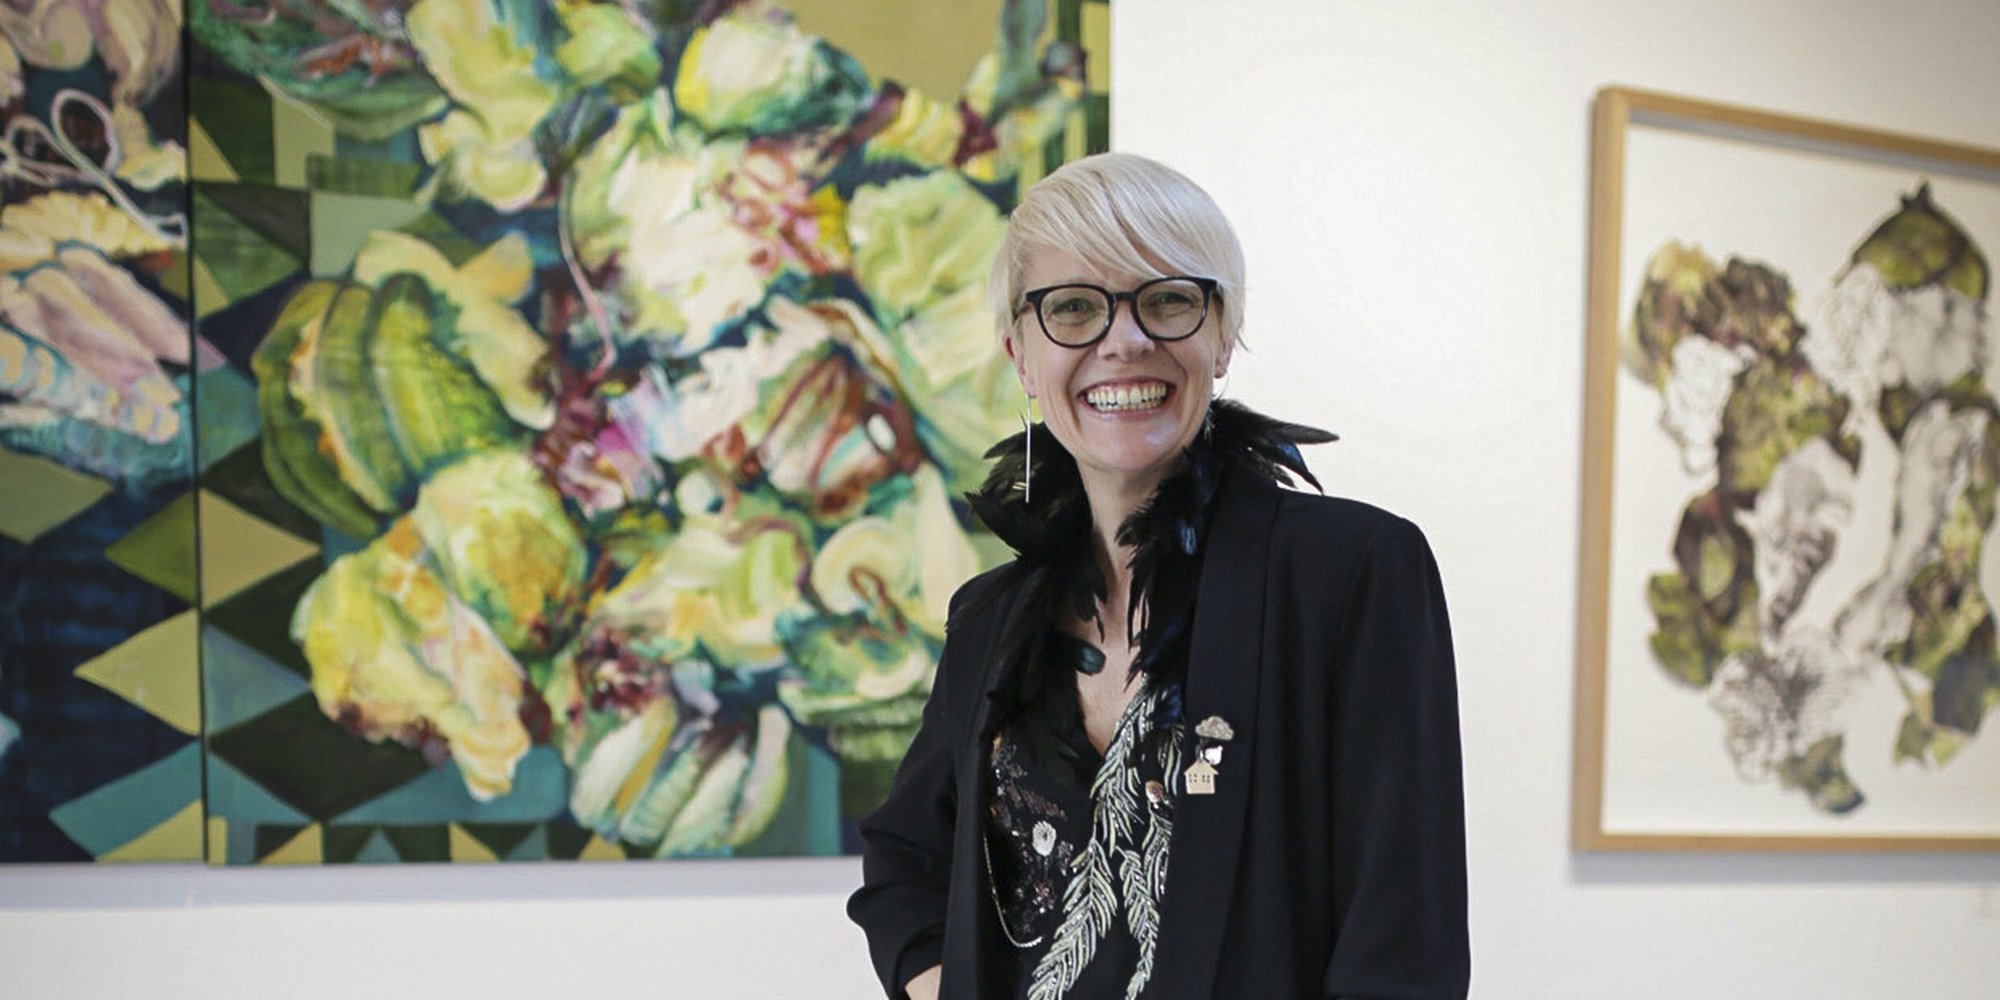 A warm welcome to Van Rensburg Galleries founder & Artfinder's new curator, Beulah Van Rensburg